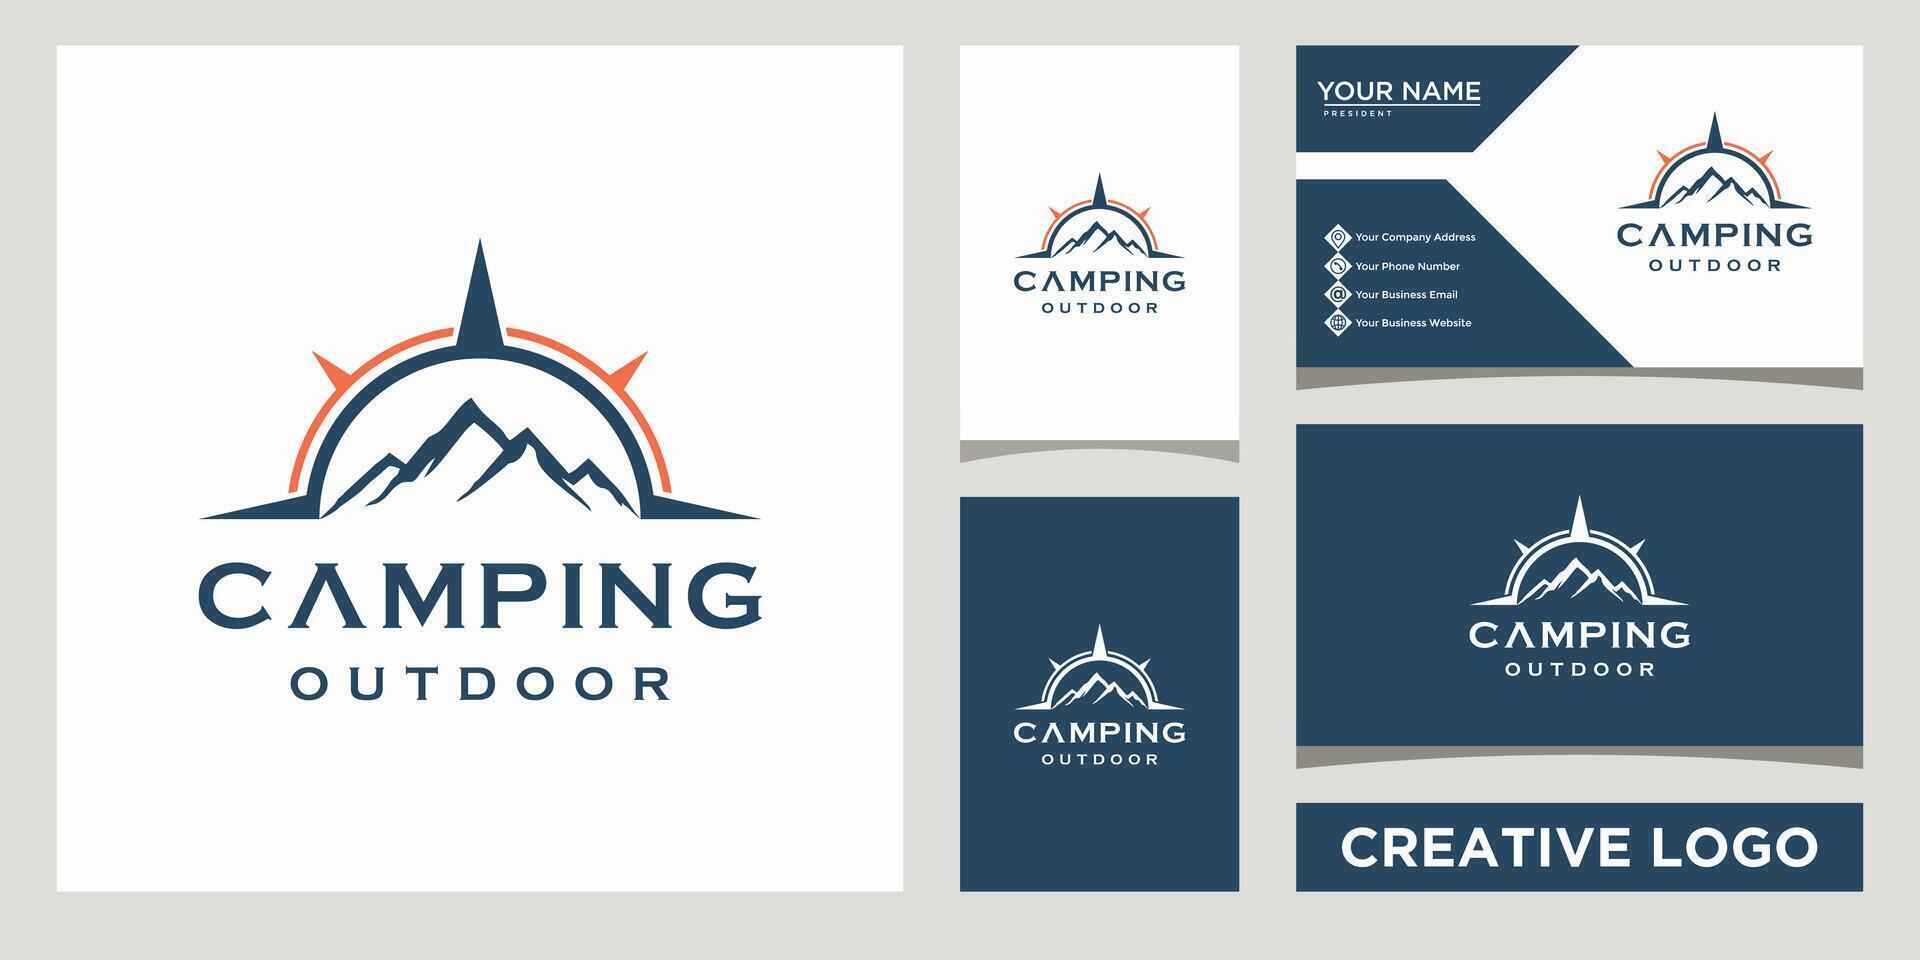 montanha colinas picos com bússola aventura, acampamento ao ar livre logotipo Projeto modelo com o negócio cartão Projeto vetor